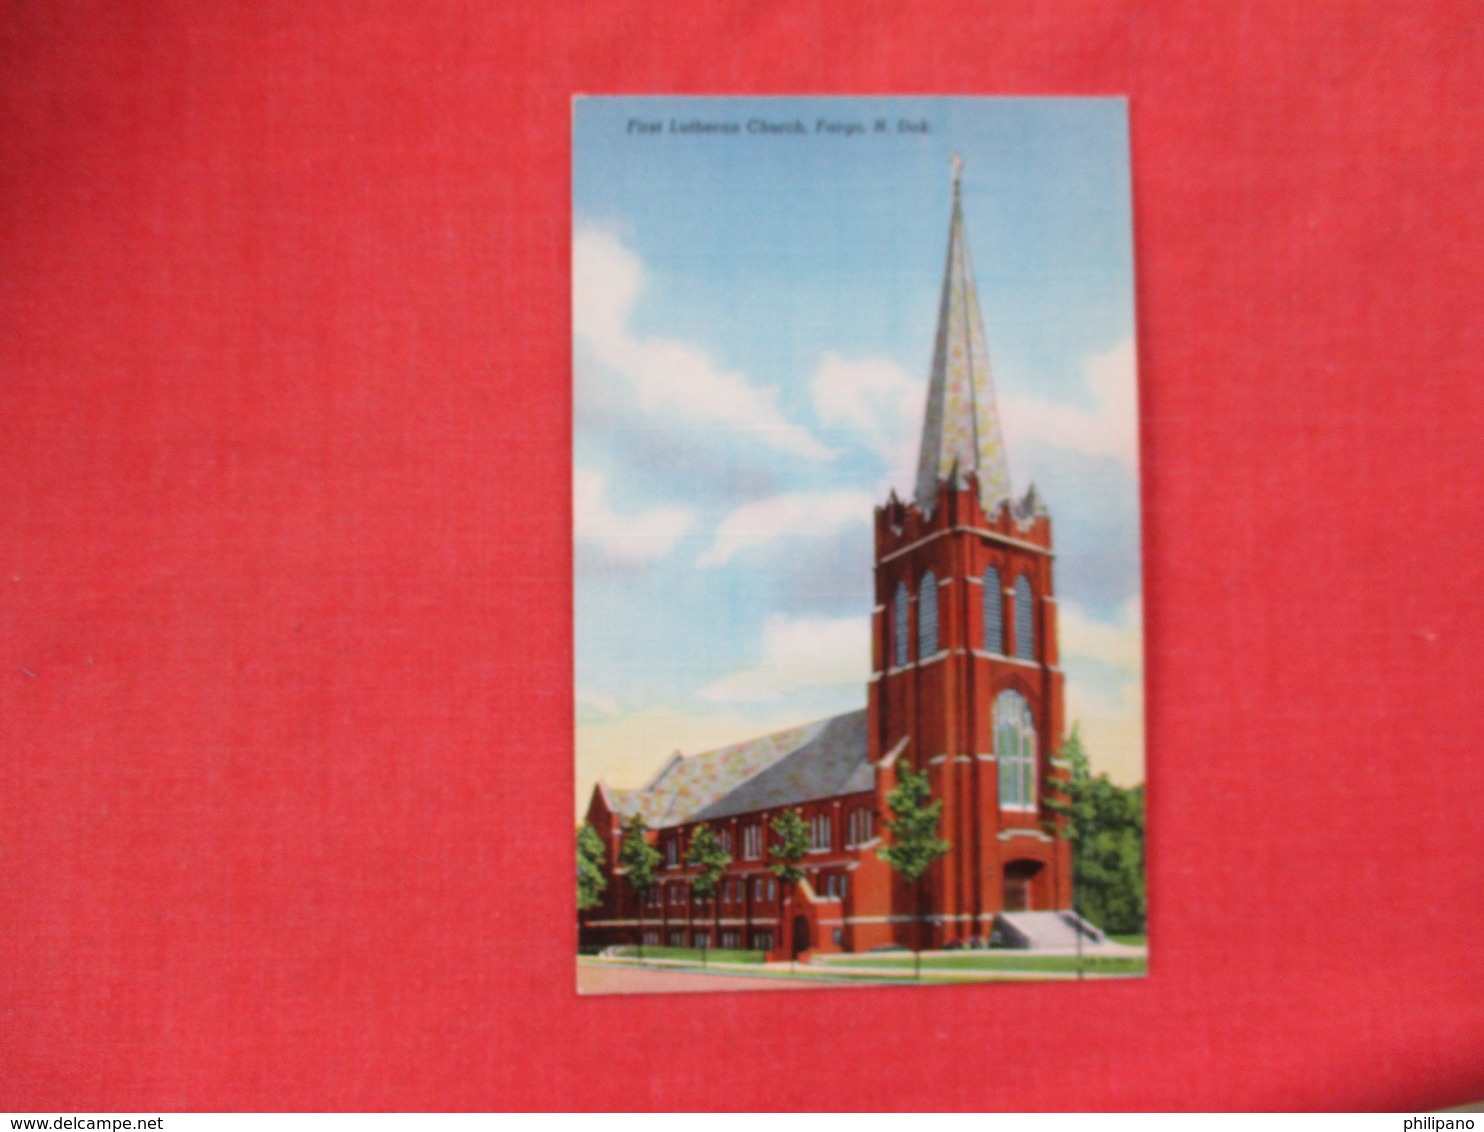 First Lutheran Church   Fargo    North Dakota >      Ref. 3082 - Fargo